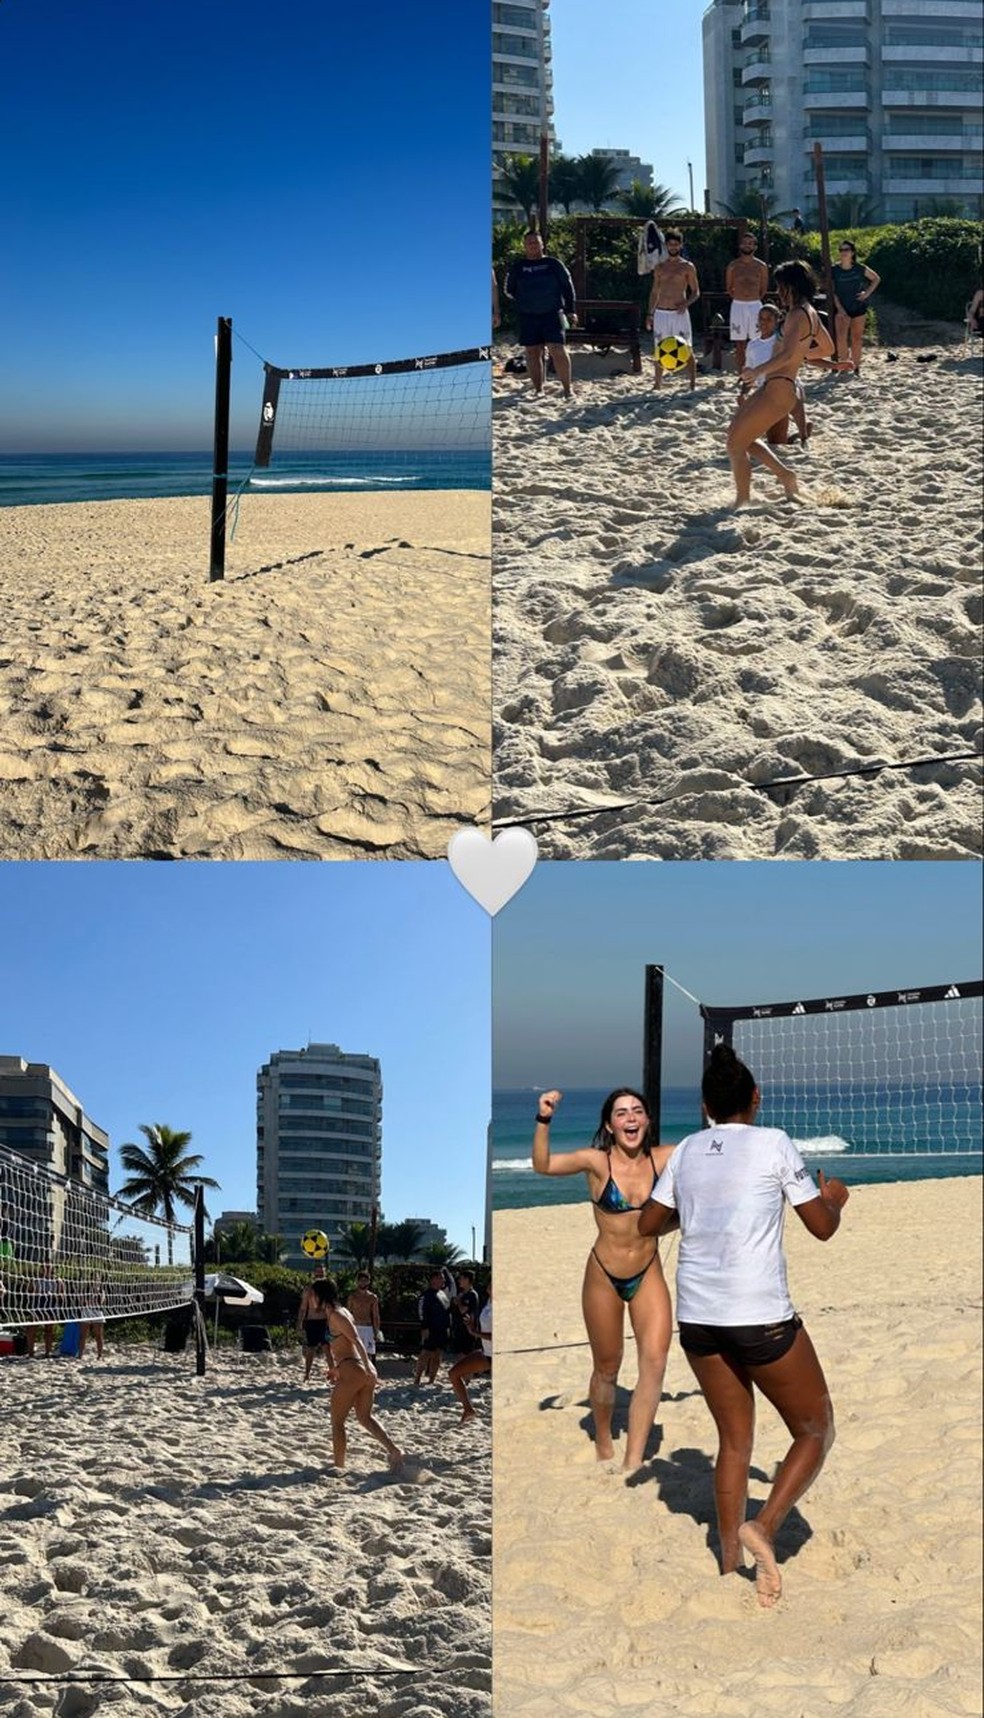 Atriz curtiu dia na praia jogando futevôlei — Foto: Reprodução/ Instagram